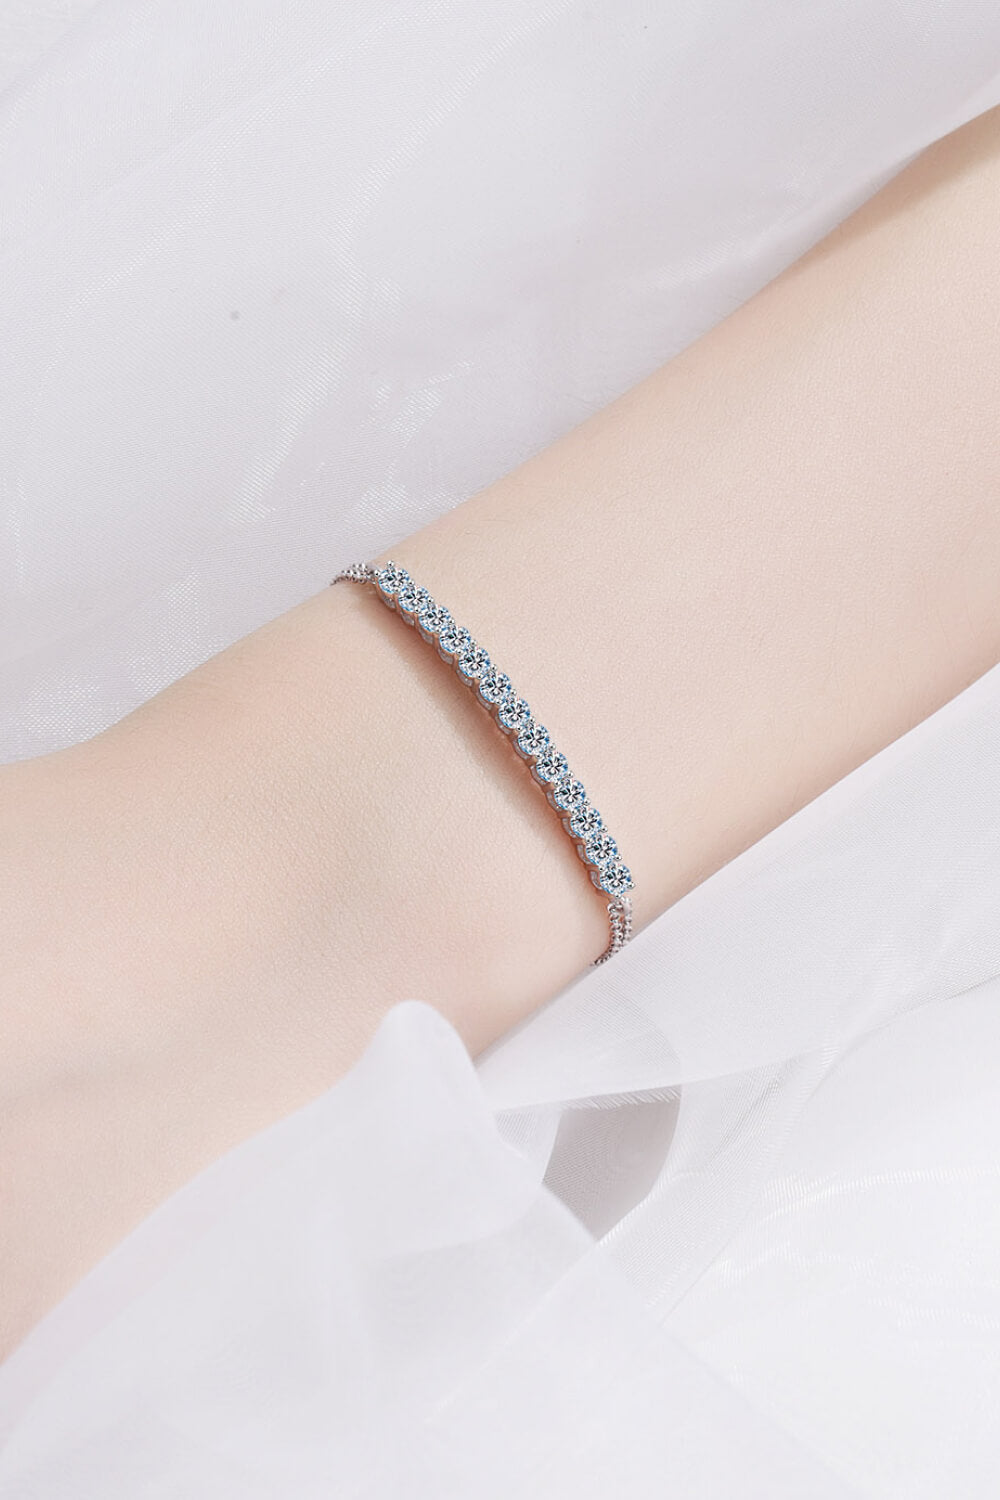 Adored Moissanite Sterling Silver Bracelet - Silver / One Size - Women’s Jewelry - Bracelets - 3 - 2024